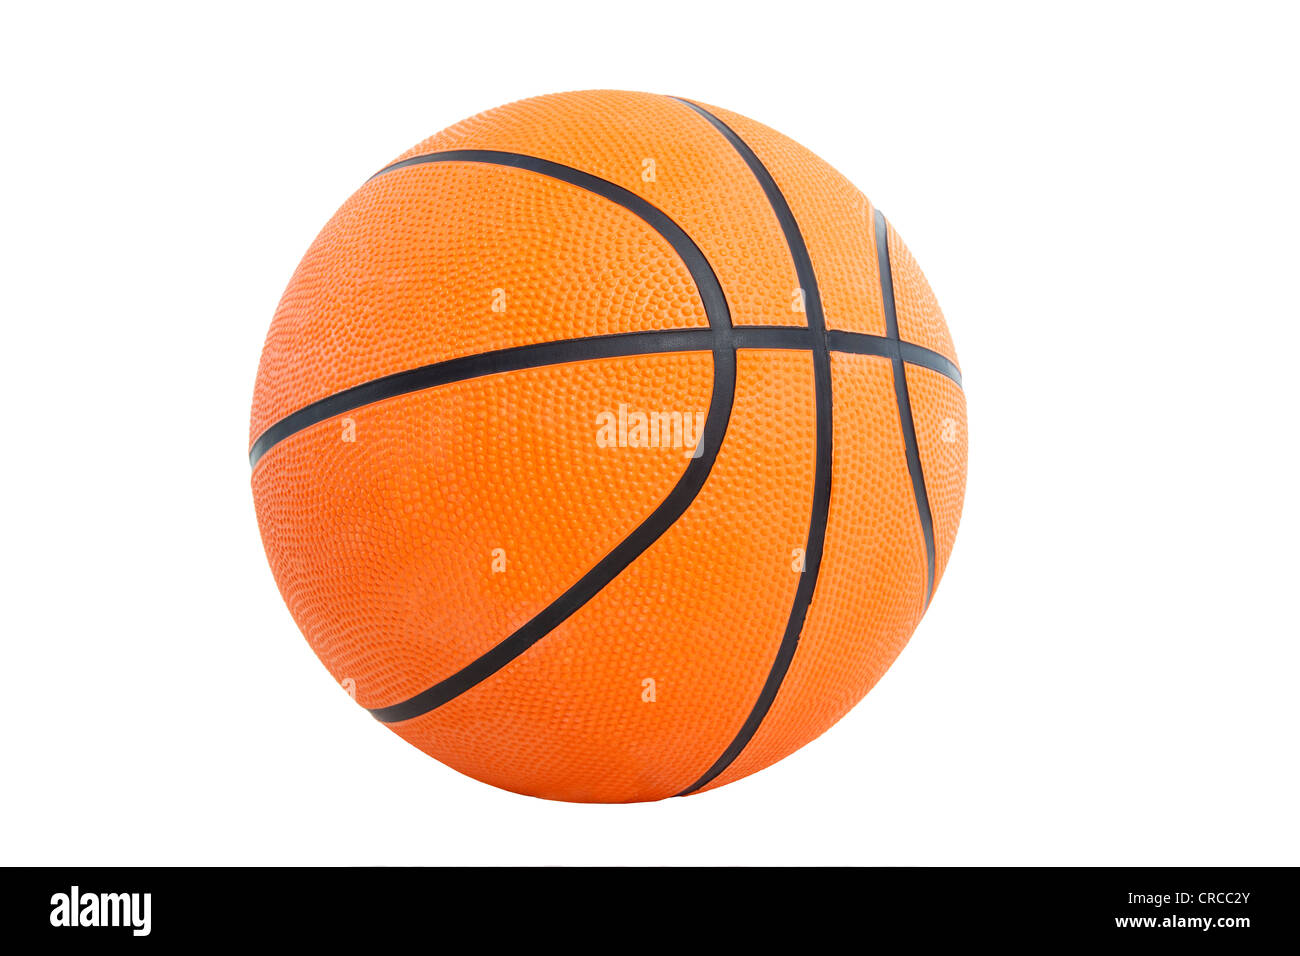 Palla da basket immagini e fotografie stock ad alta risoluzione - Alamy